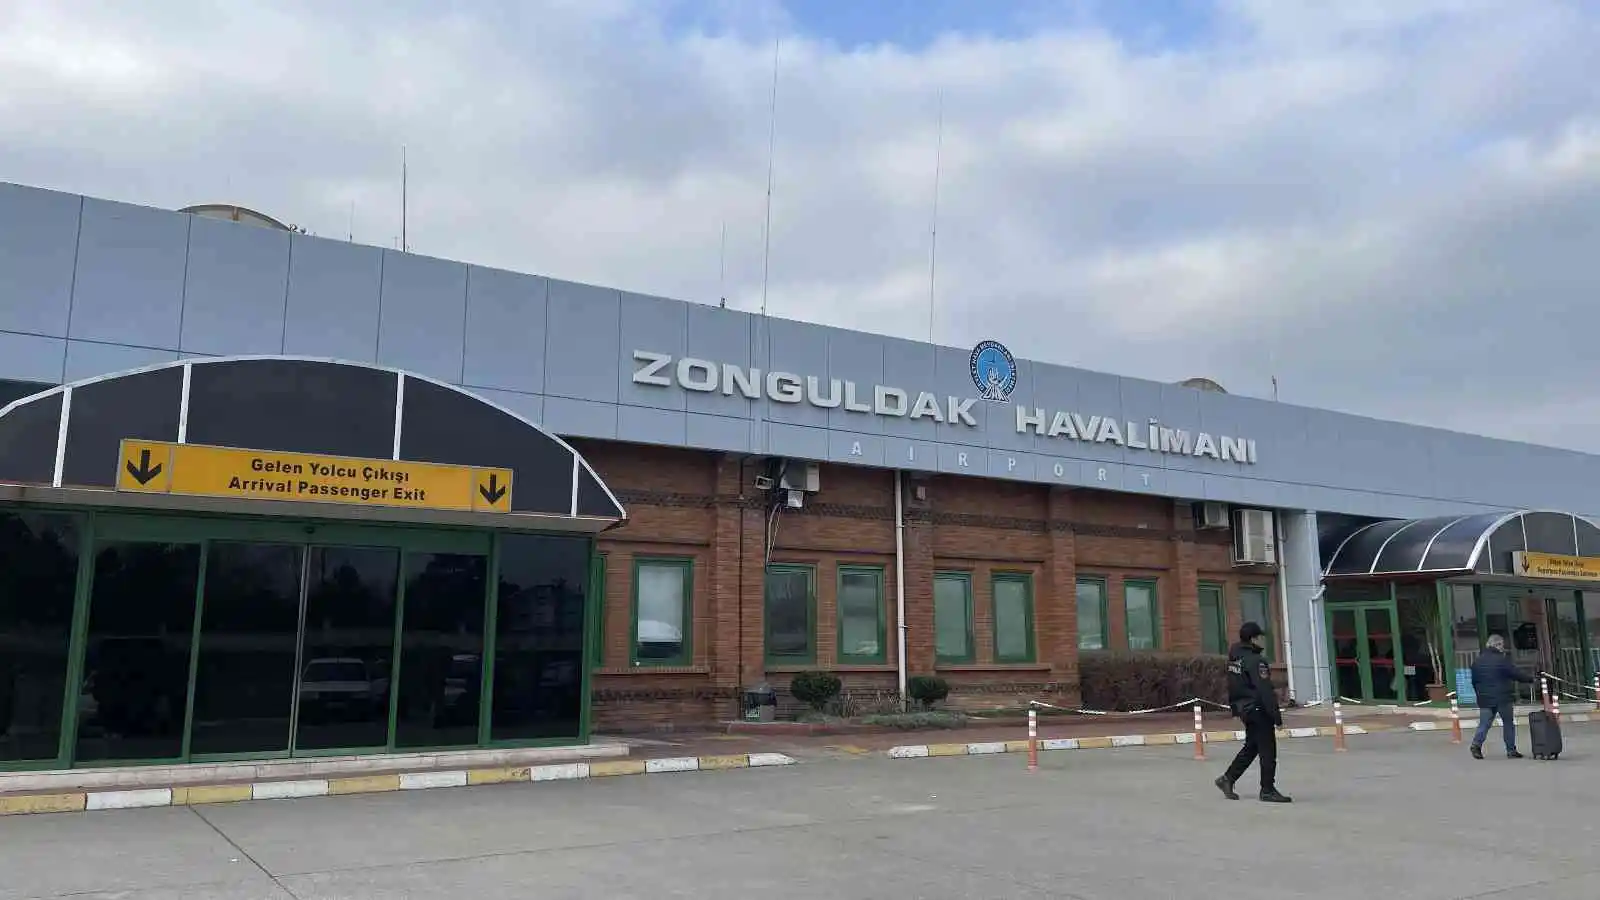 Zonguldak Havalimanı’nda çalışmalar başladı
